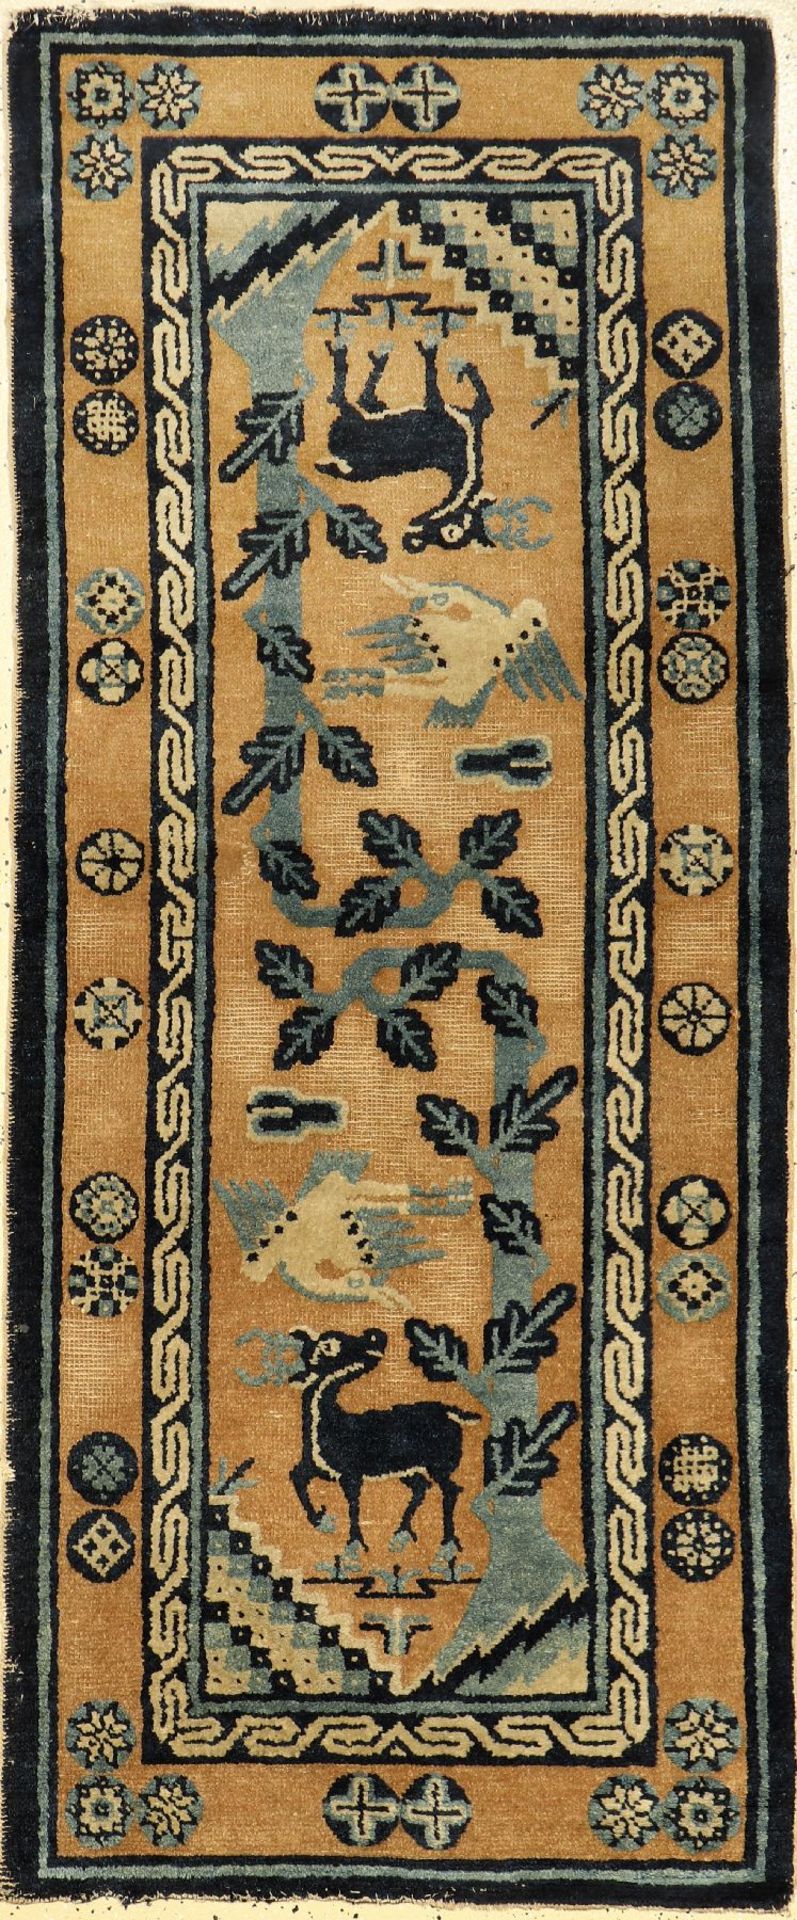 Pao Tao antik, China, um 1900, Wolle auf Baumwolle, ca. 168 x 71 cm, EHZ: 4Pao Tao Rug, China, circa